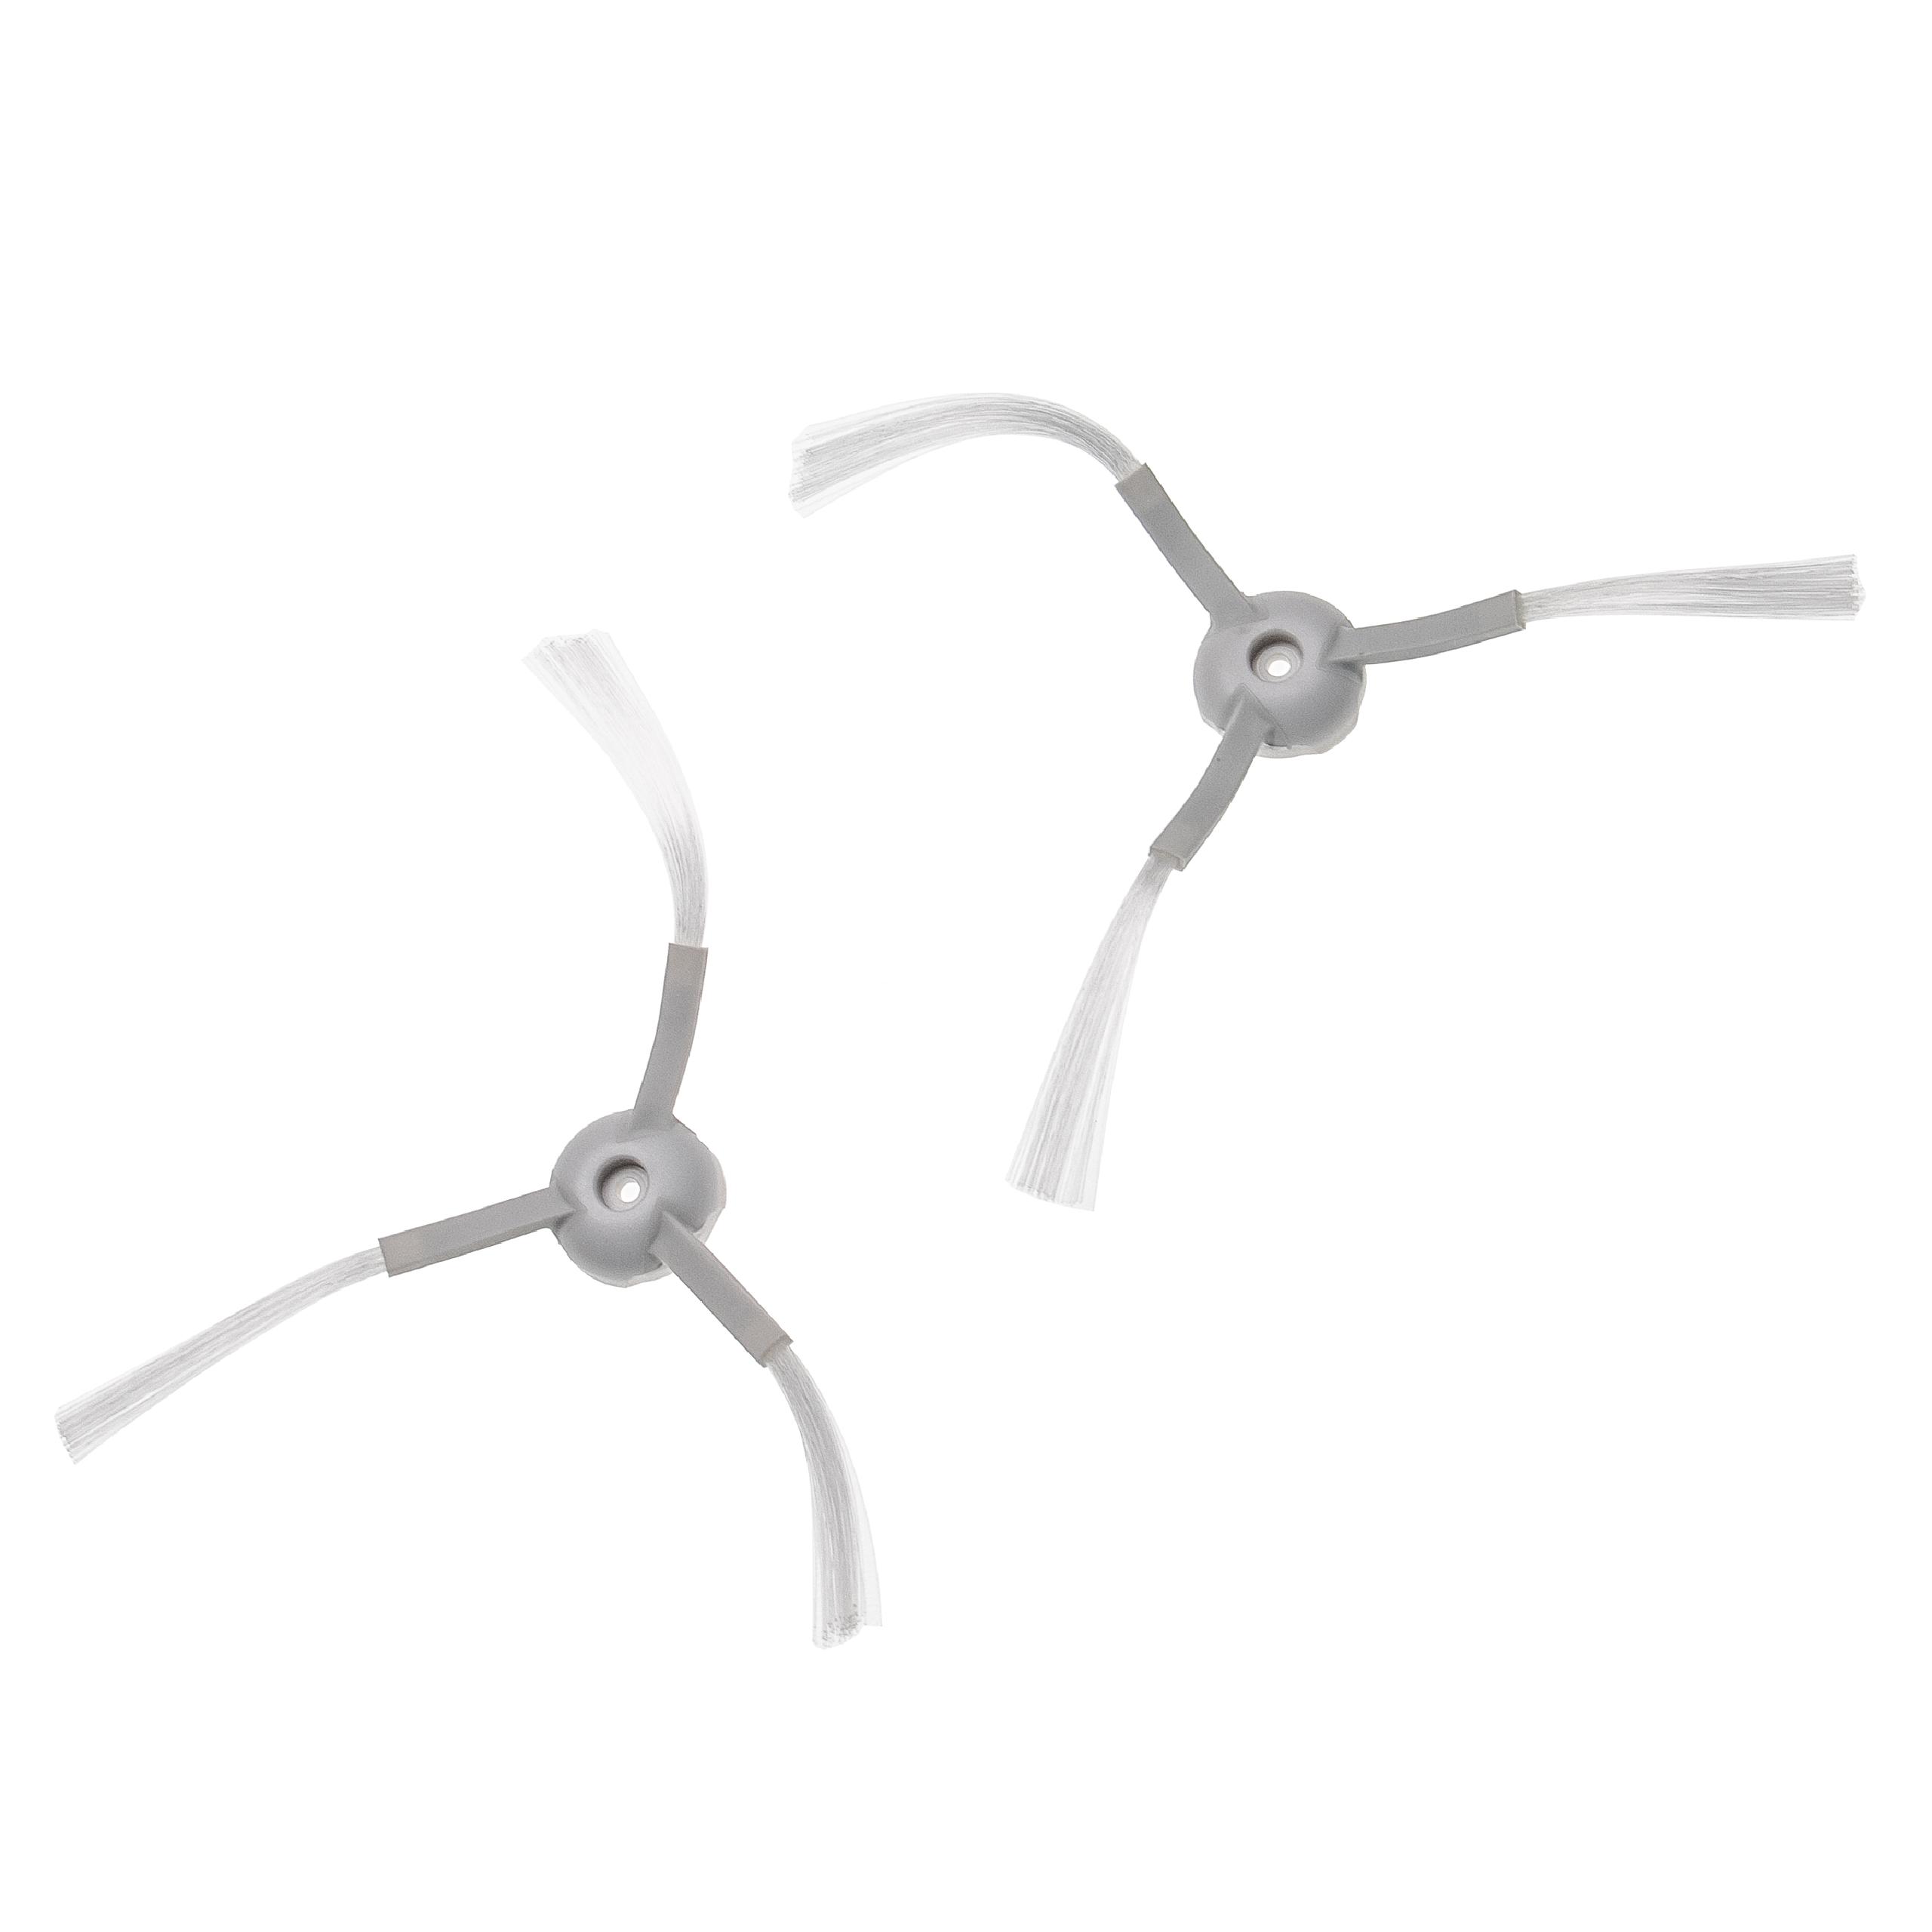 2x Cepillo lateral 3 brazos para robot aspirador Xiaomi Mijia G1 - Set de cepillos blanco